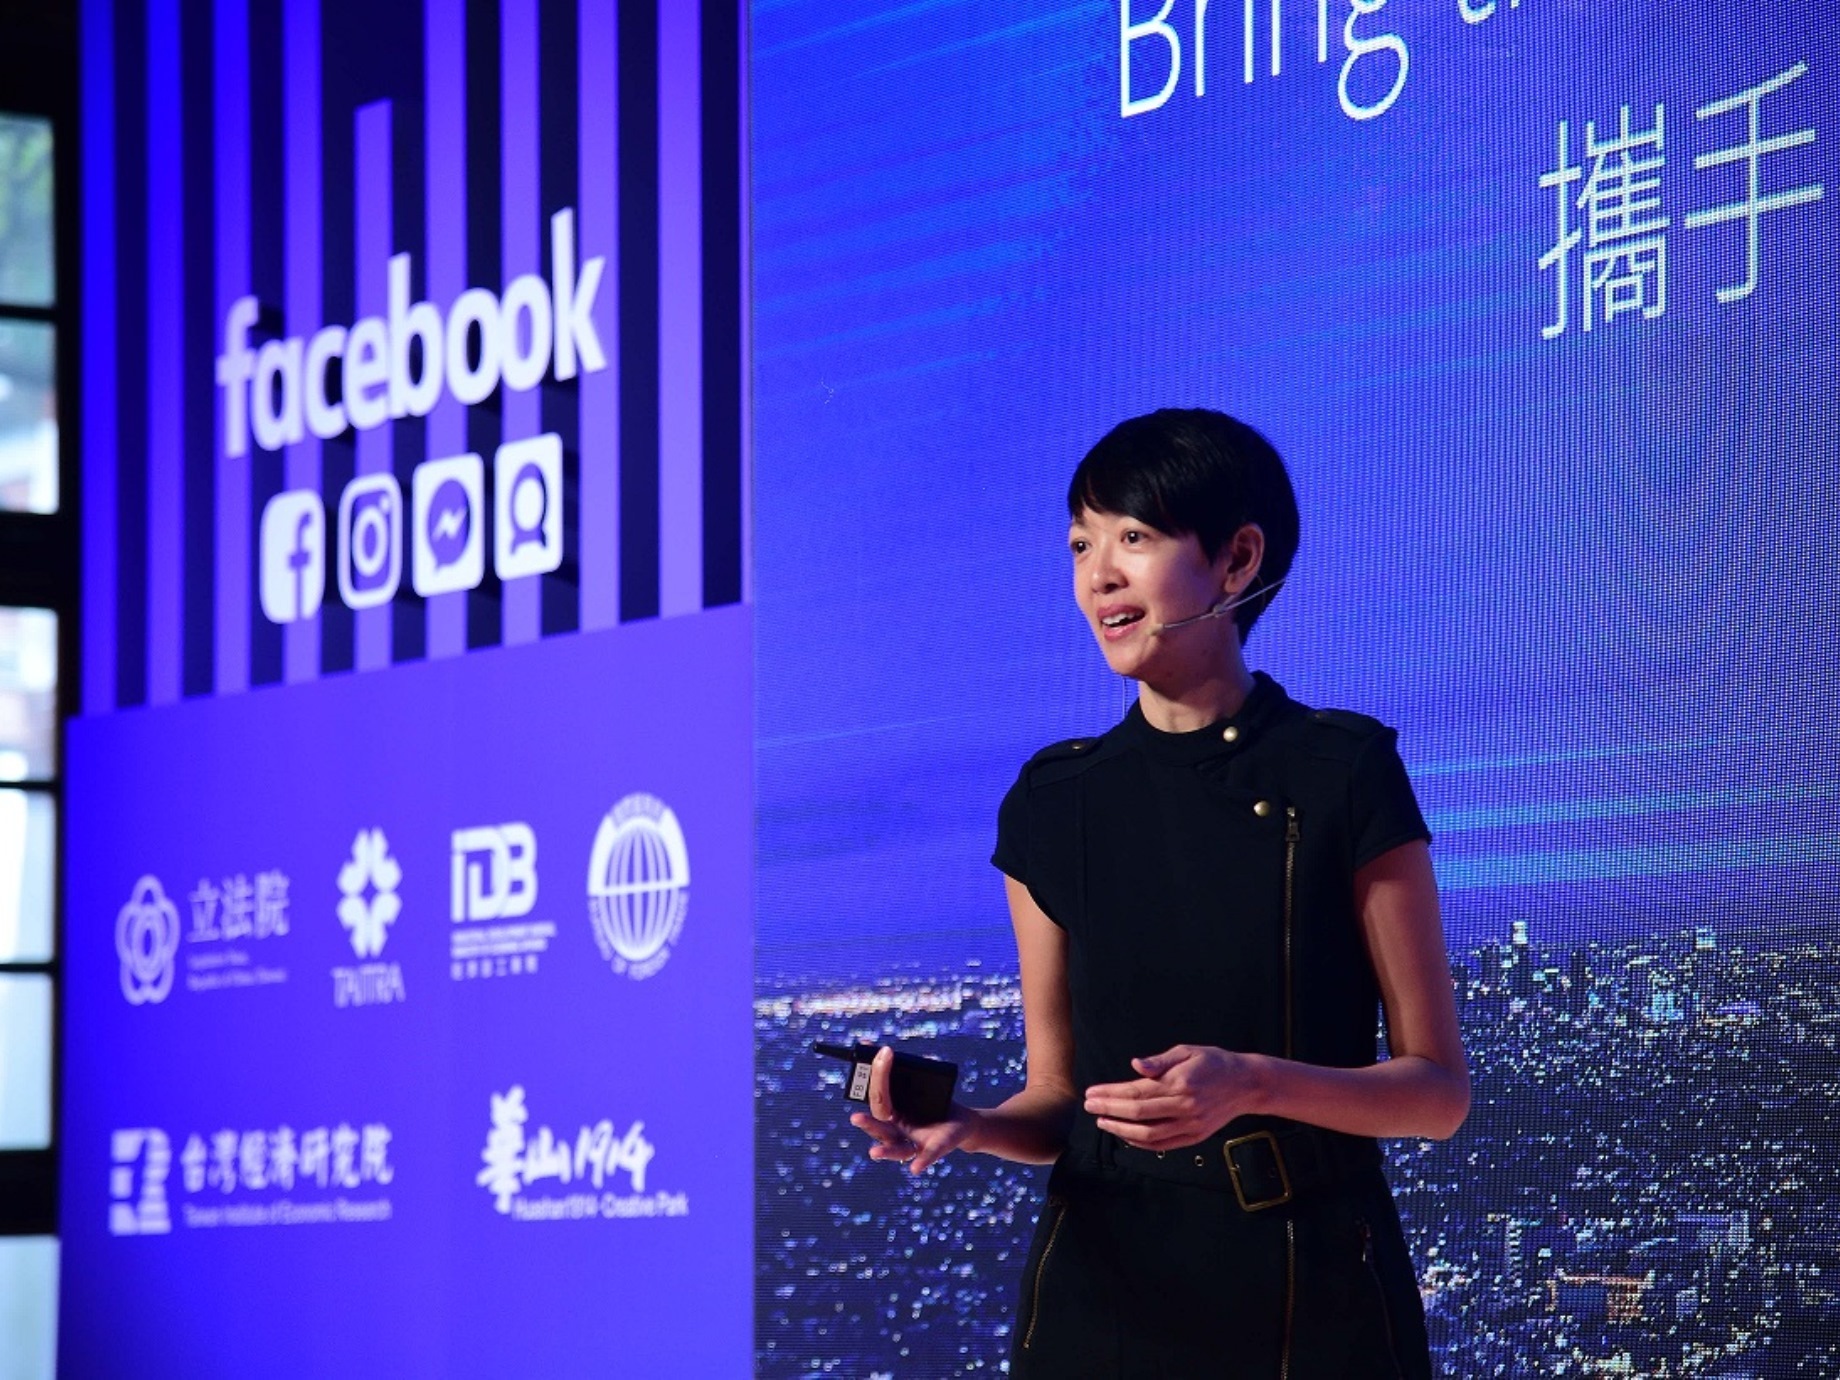 Facebook啟動「Made by Taiwan」計畫，助功台灣企業進軍國際